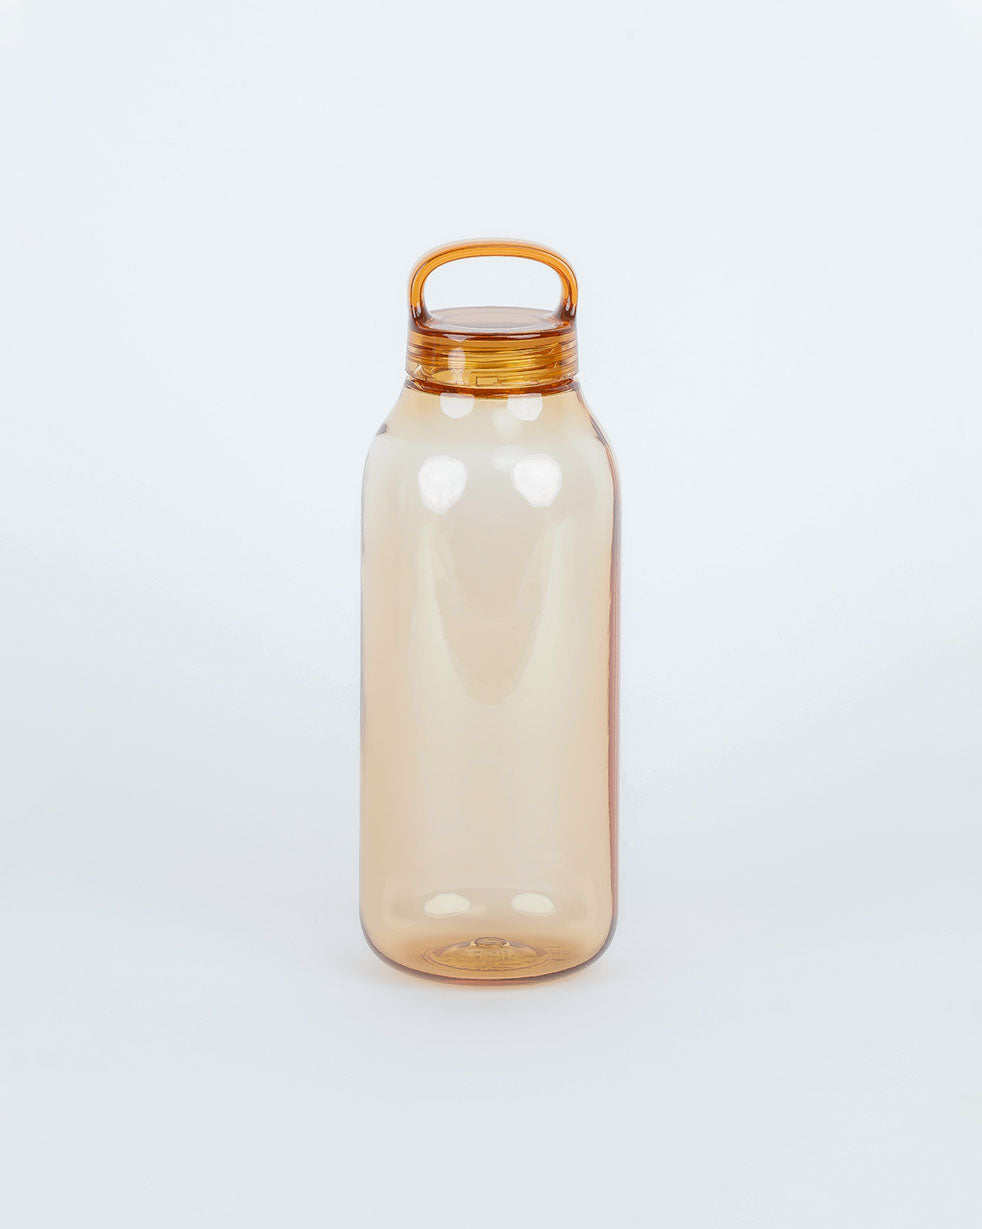 KINTO Water Bottle (500ml/17oz)